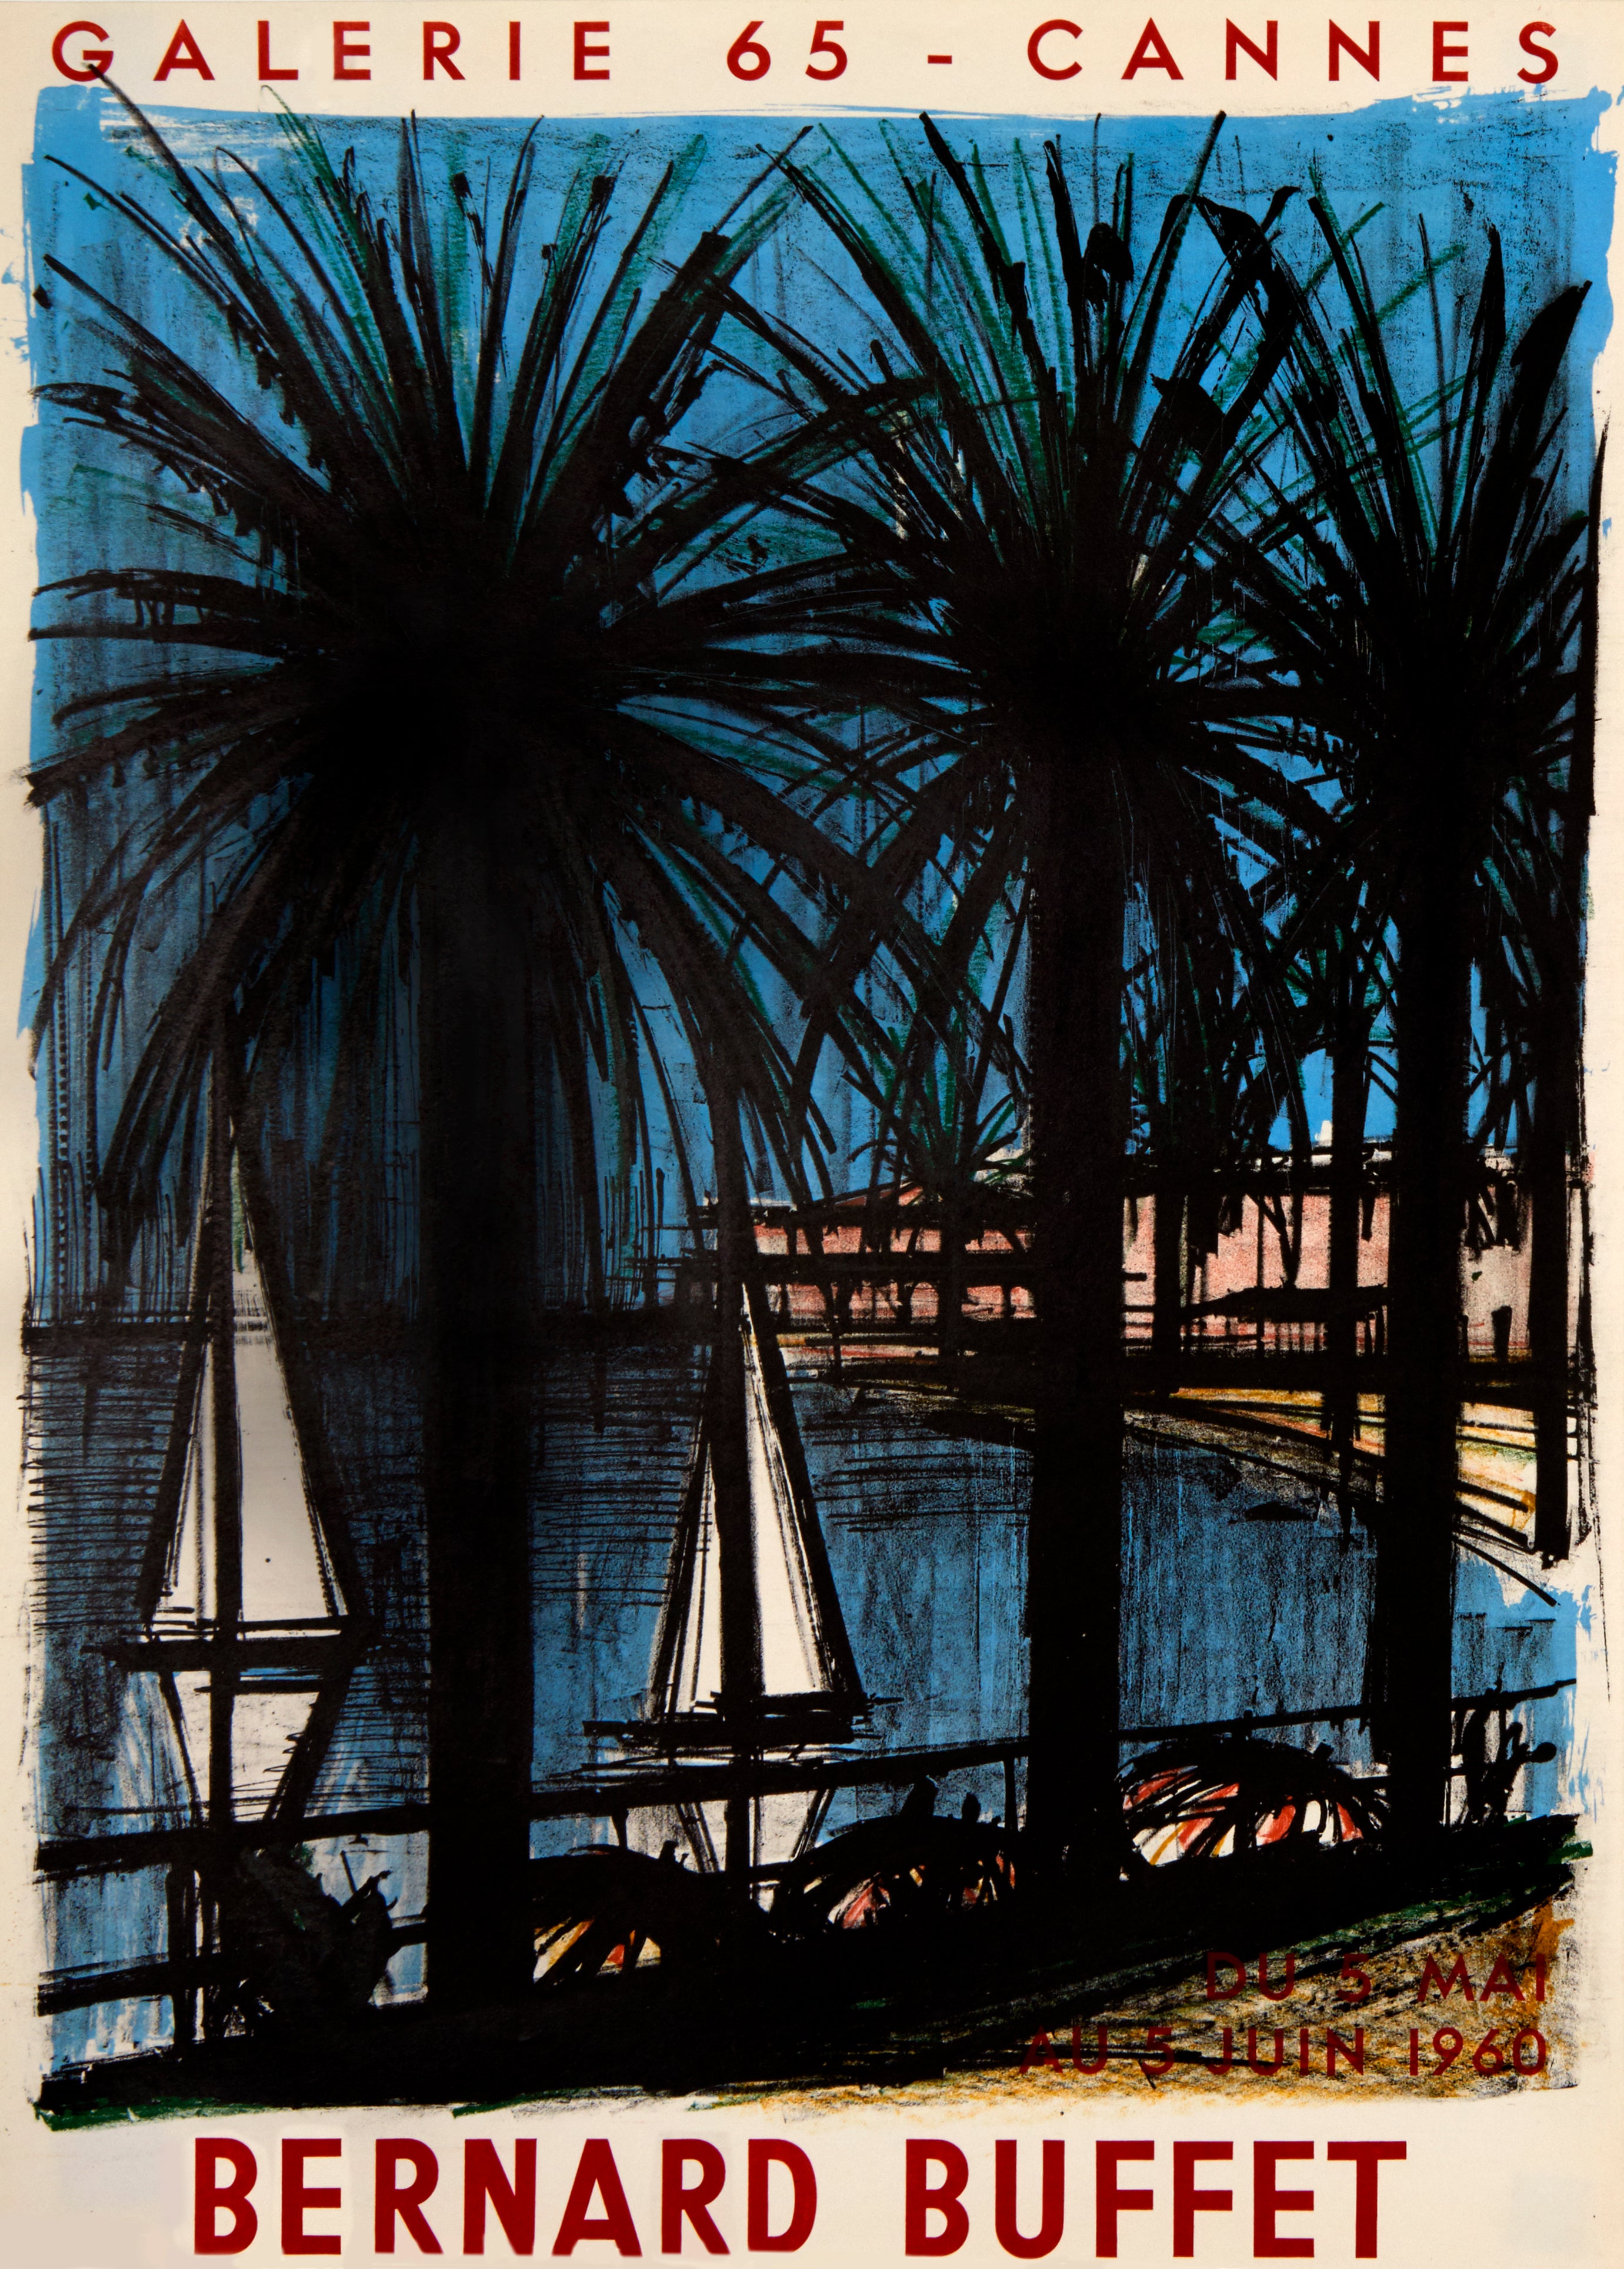 Galerie 65 - Cannes, by Bernard Buffet, 1960